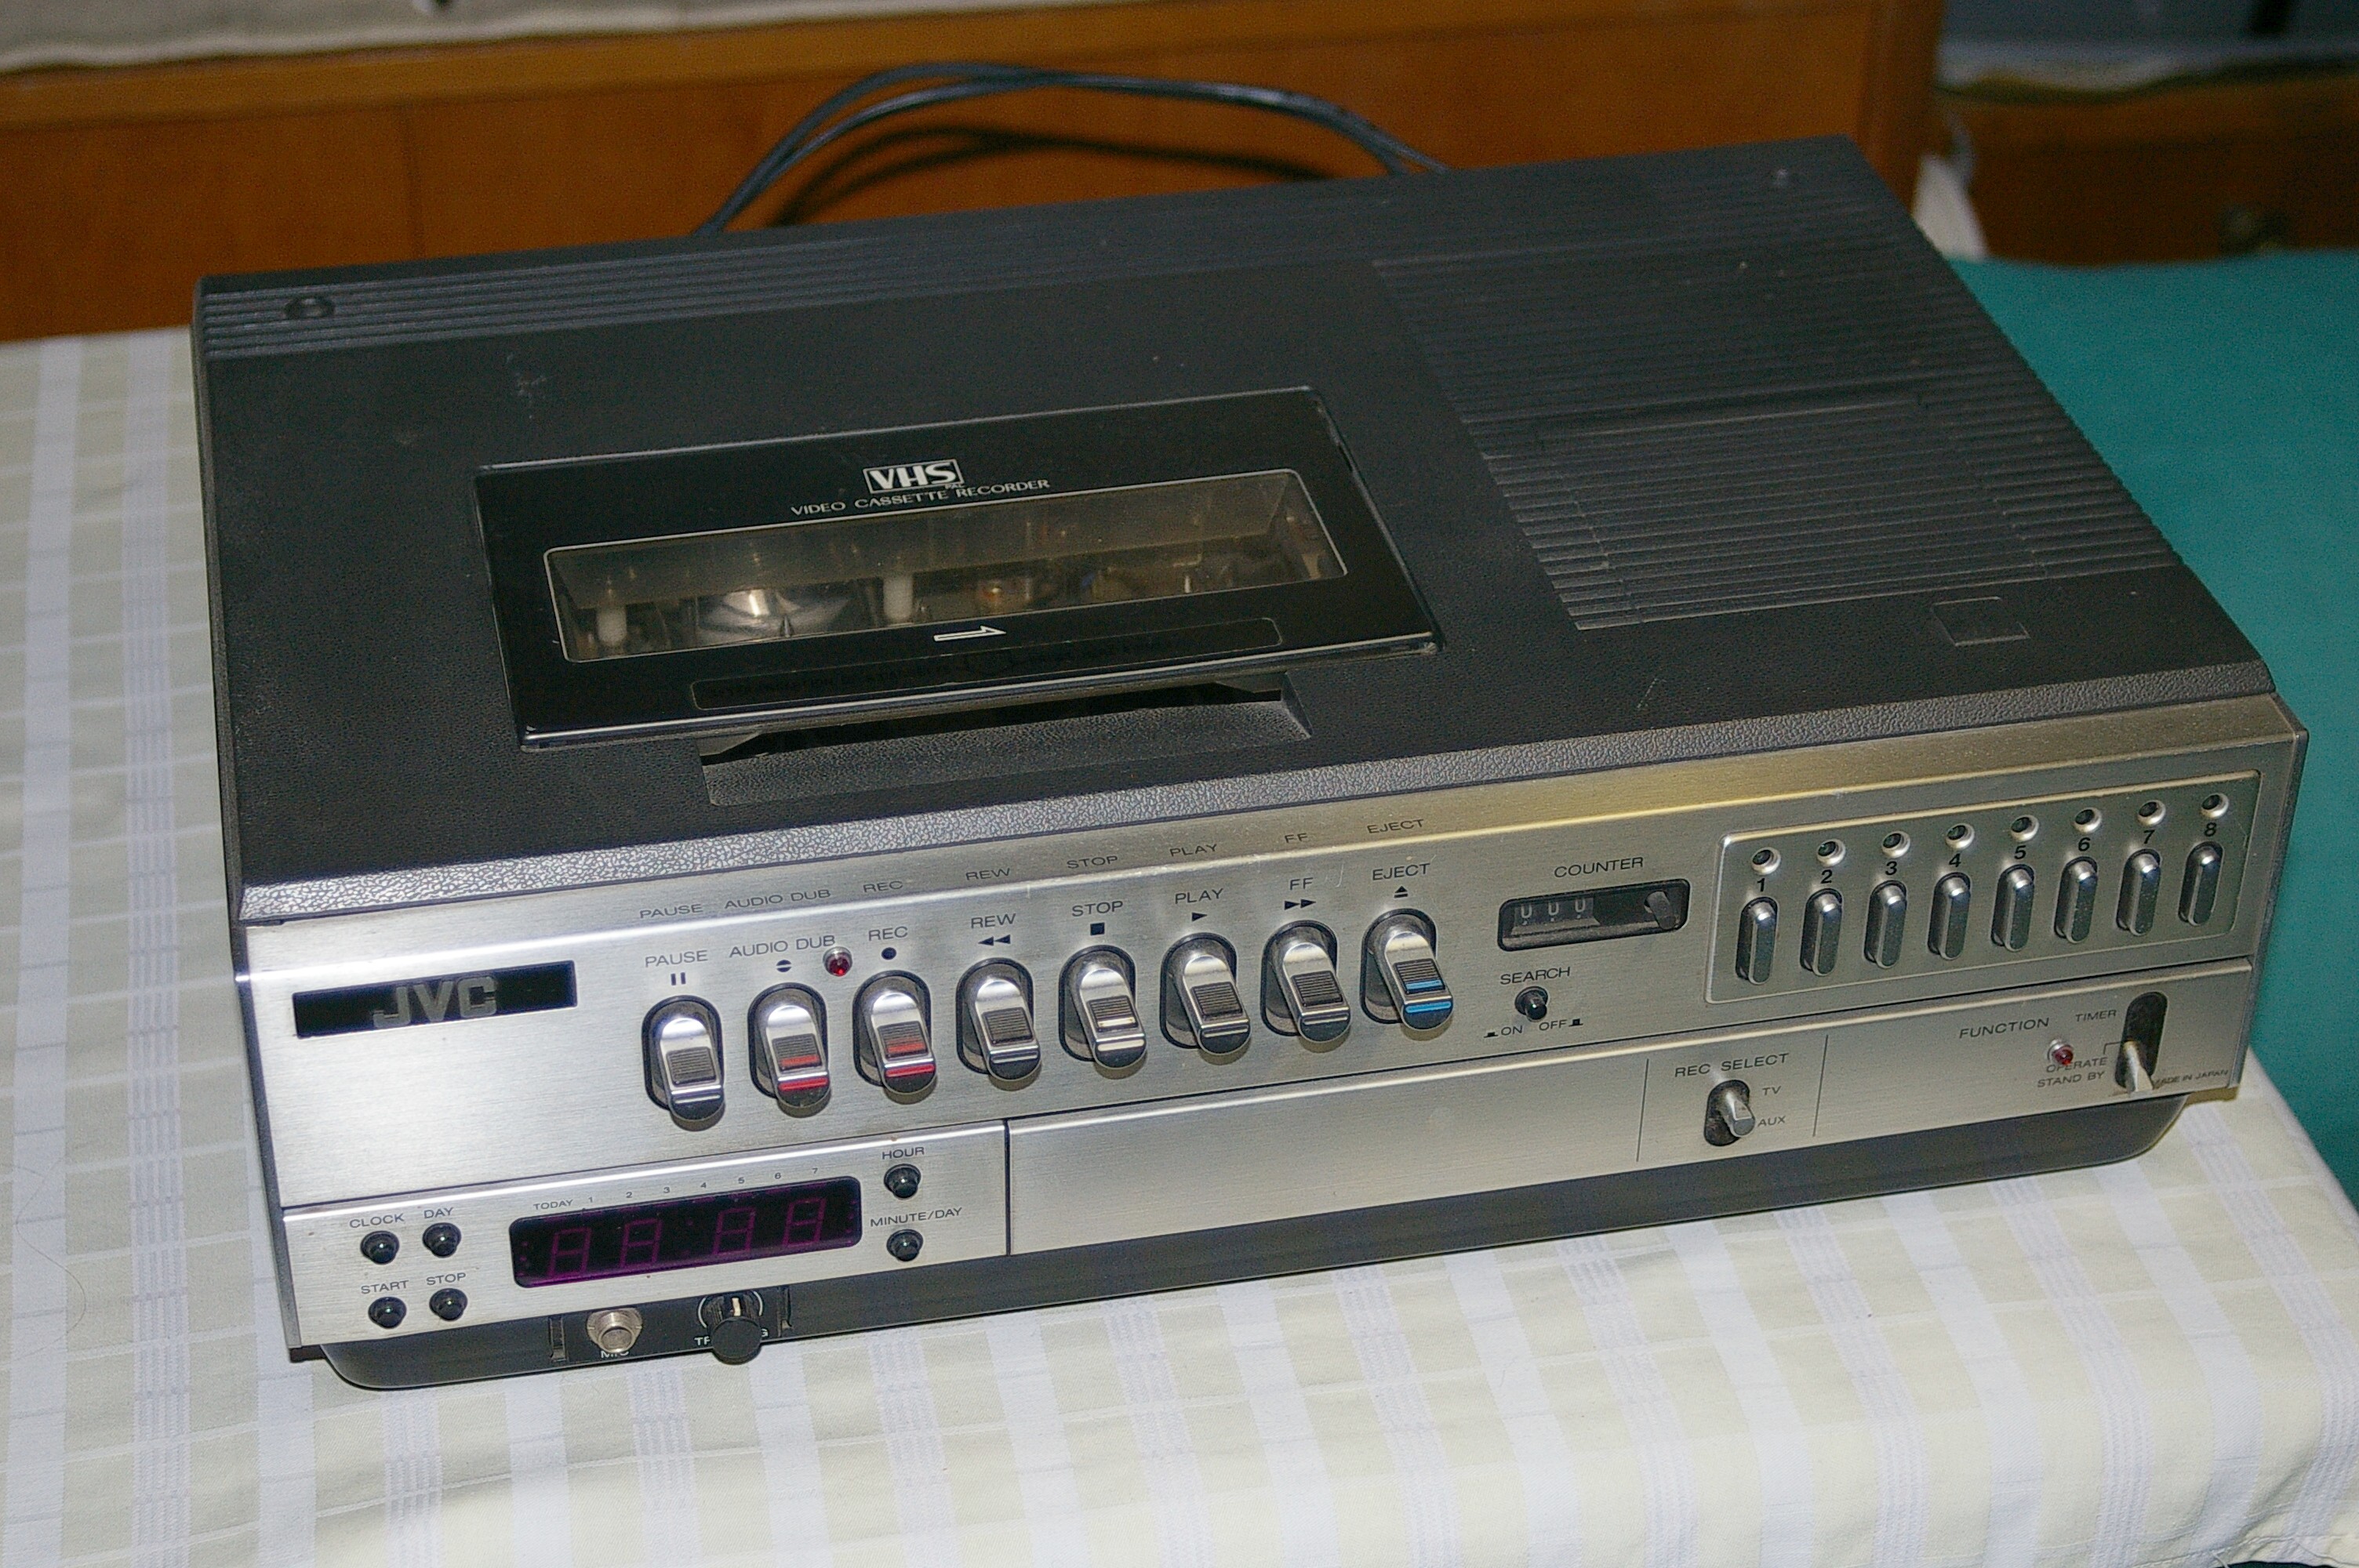 JVC Video Cassette Recorder HR-3330EG